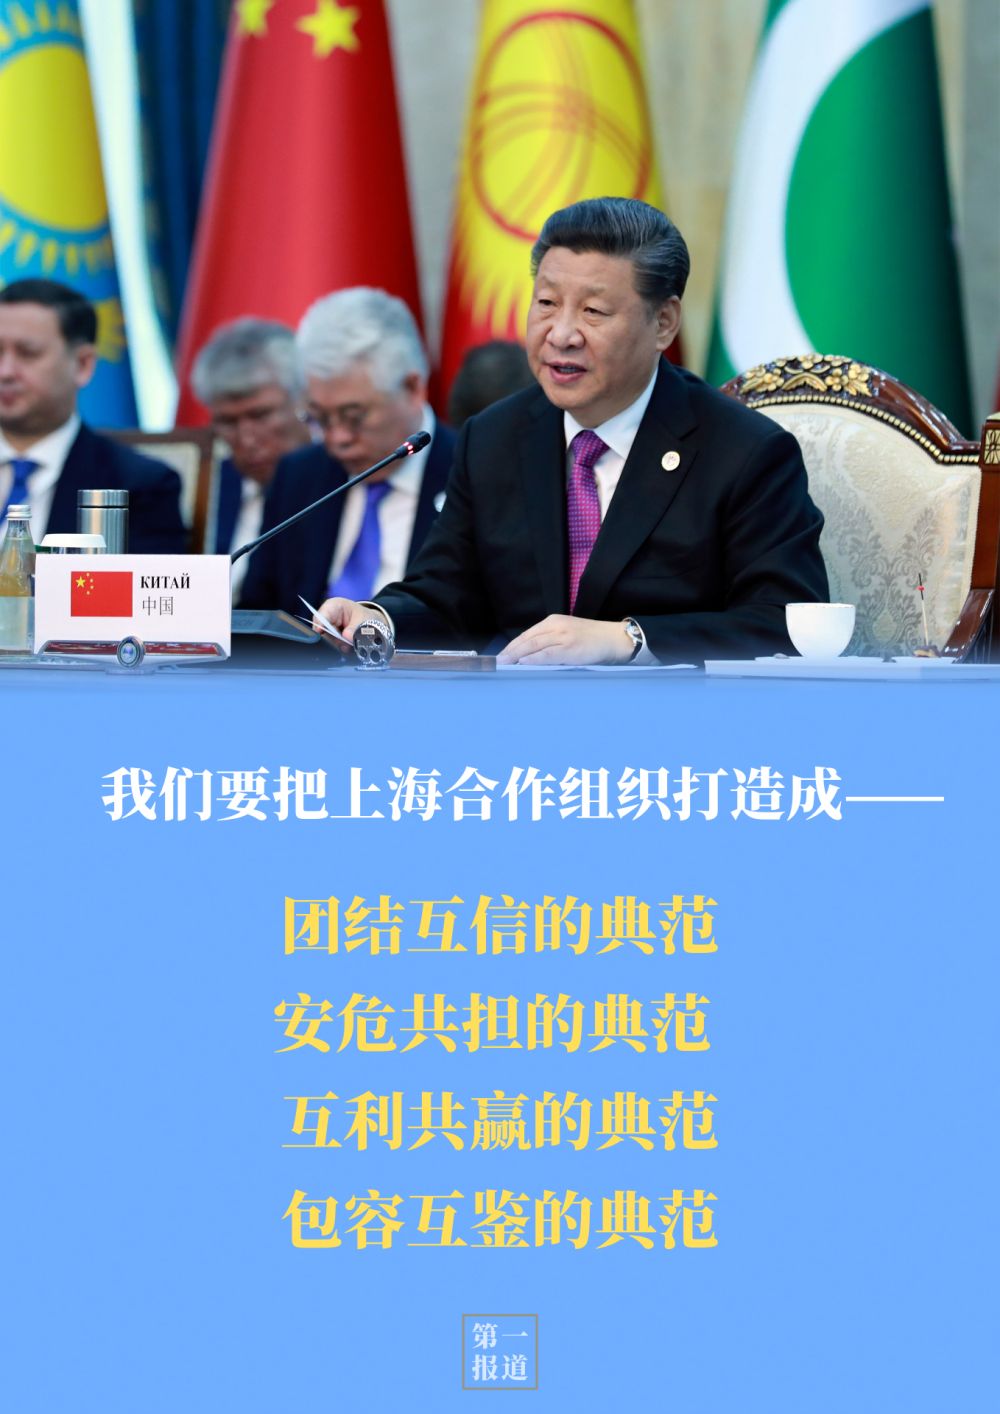 第一报道 | 重温习主席“双峰会”讲话 感受中国智慧的时代力量